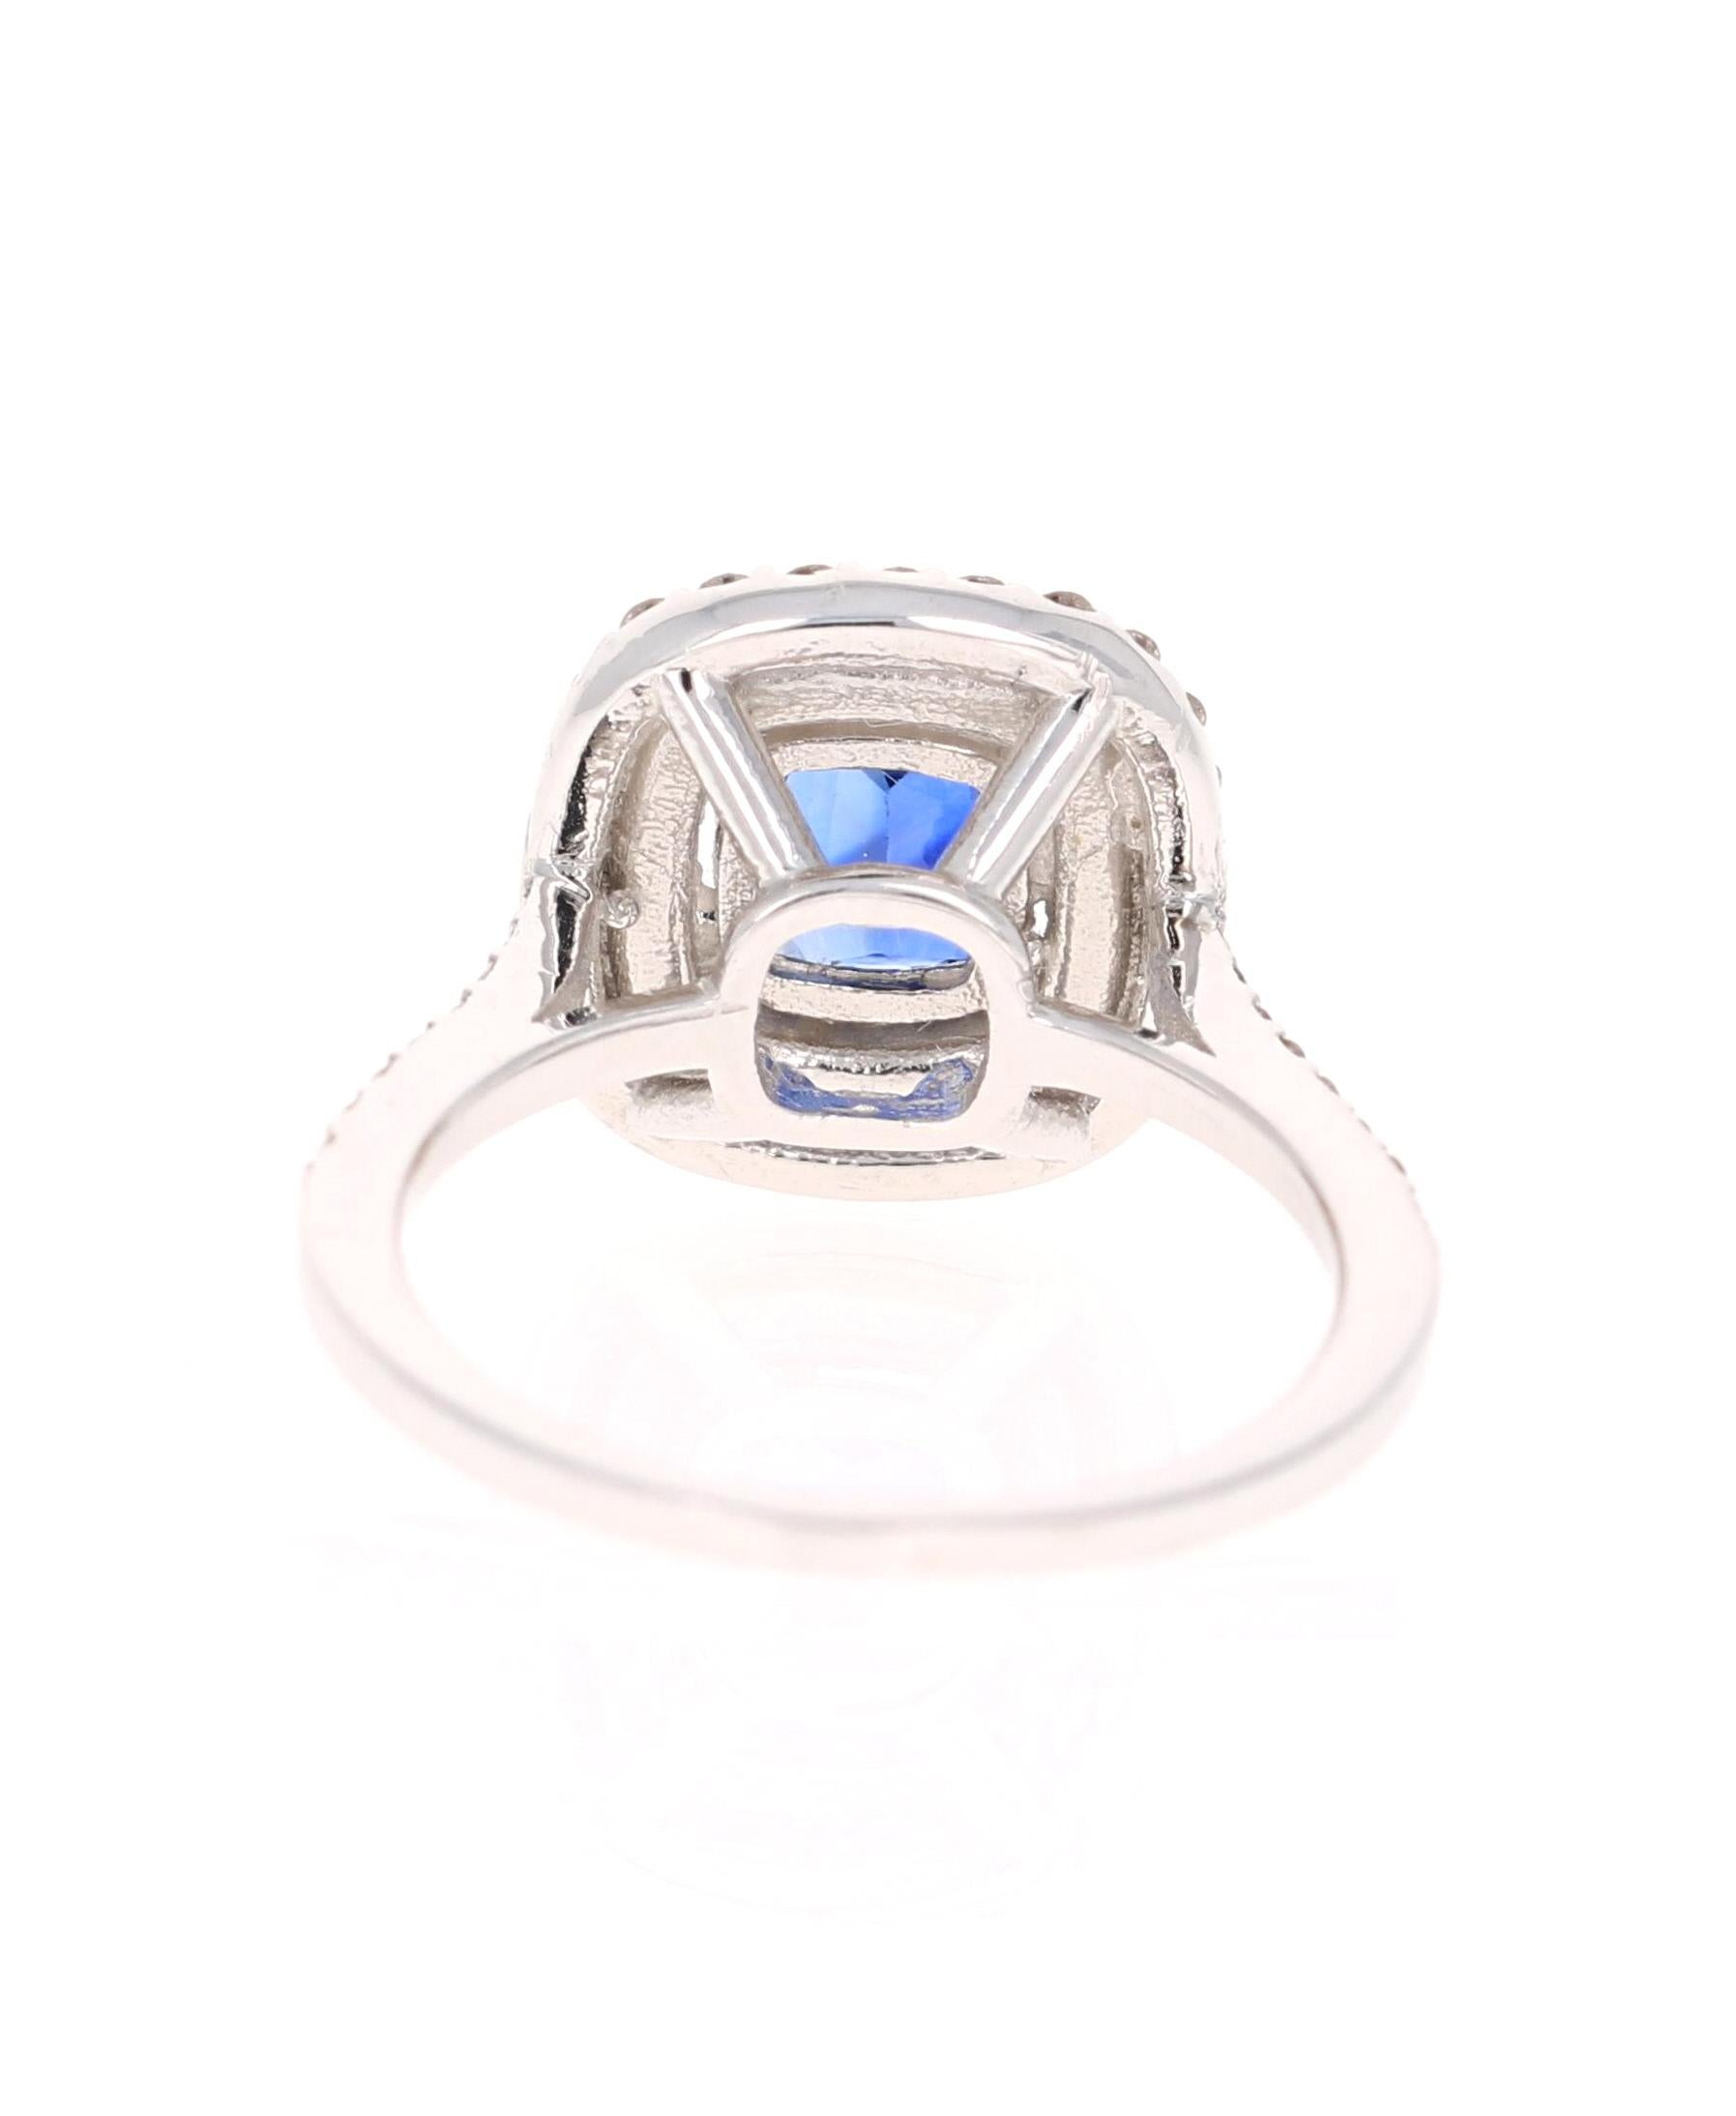 Modern 2.29 Carat Blue Sapphire Diamond Ring GIA Certified 14 Karat White Gold Ring